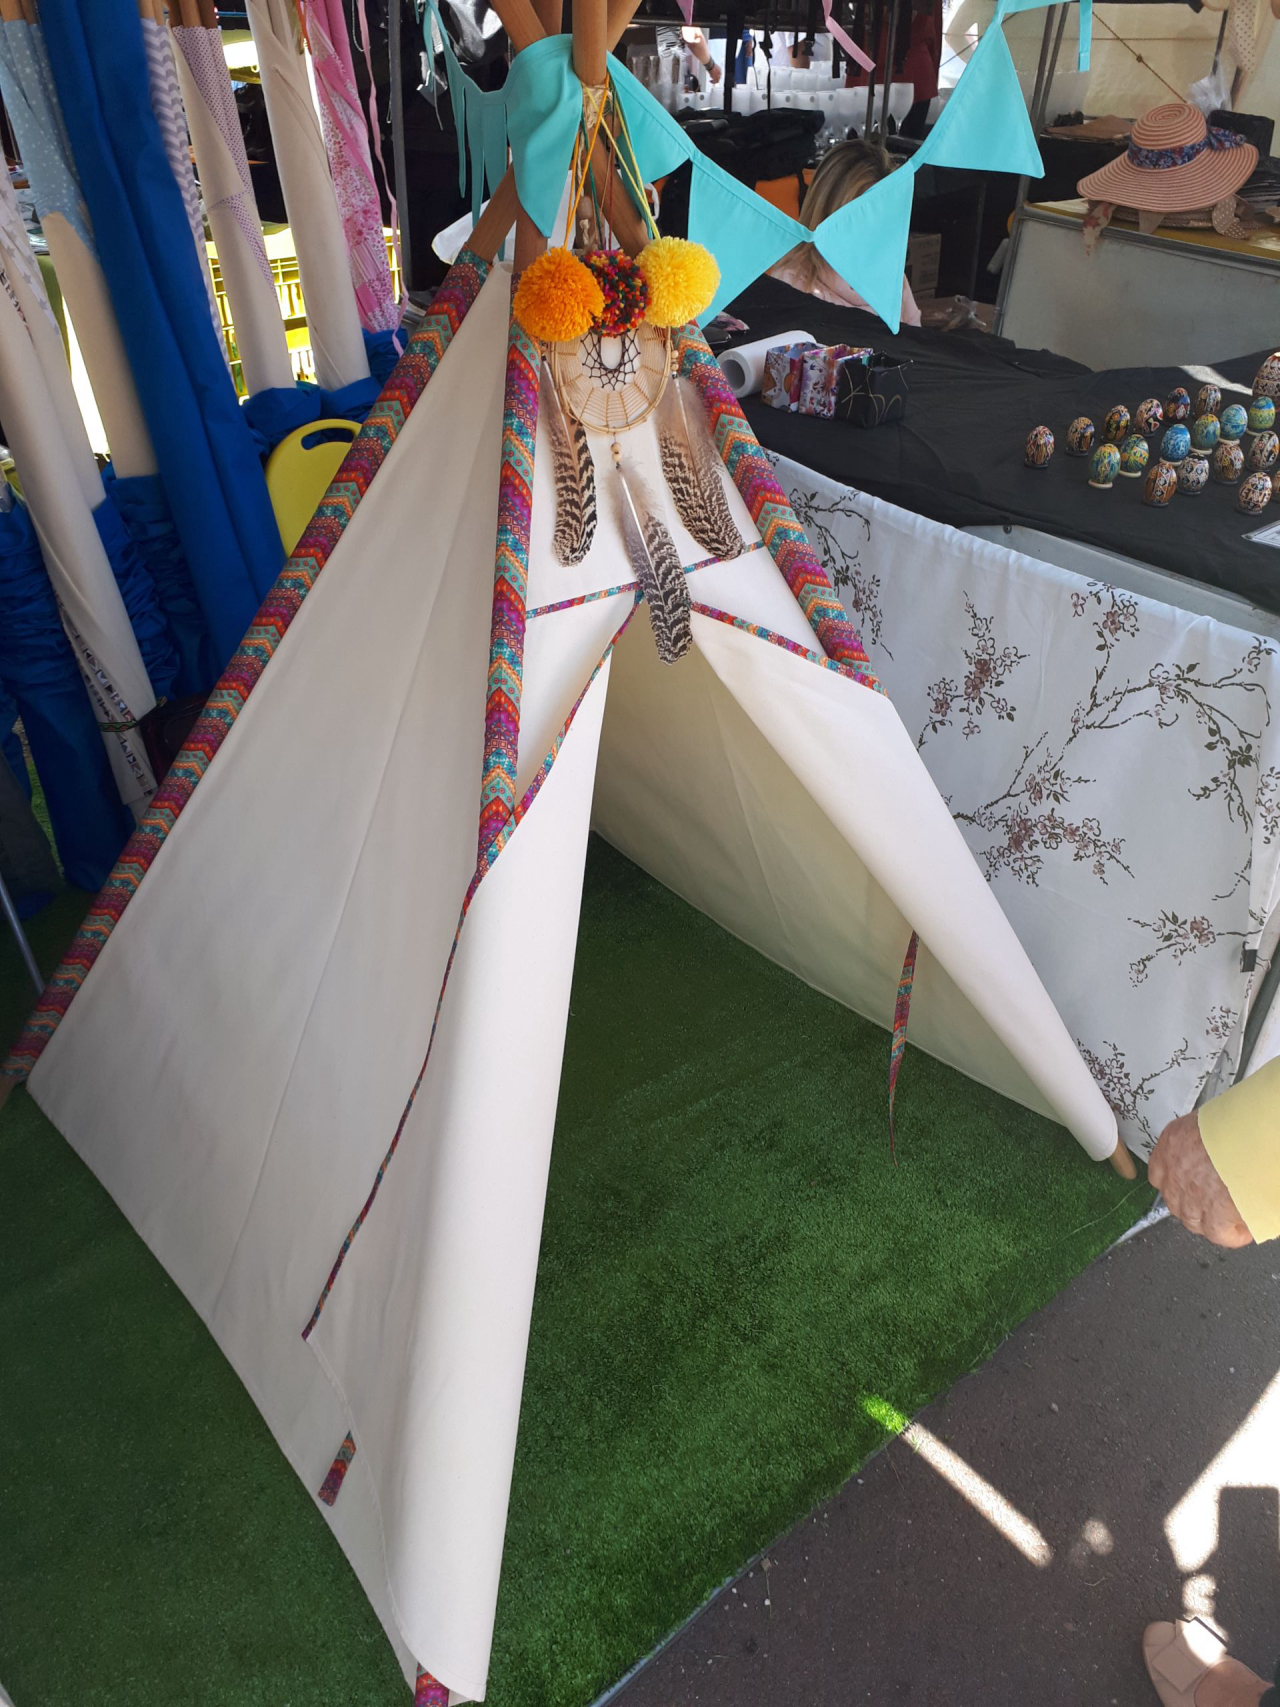 Cabanas ou tendas, feitas em tecido, servem de brinquedos que instigam a imaginação dos pequenos (Foto: Amanda Milléo / Gazeta do Povo) 